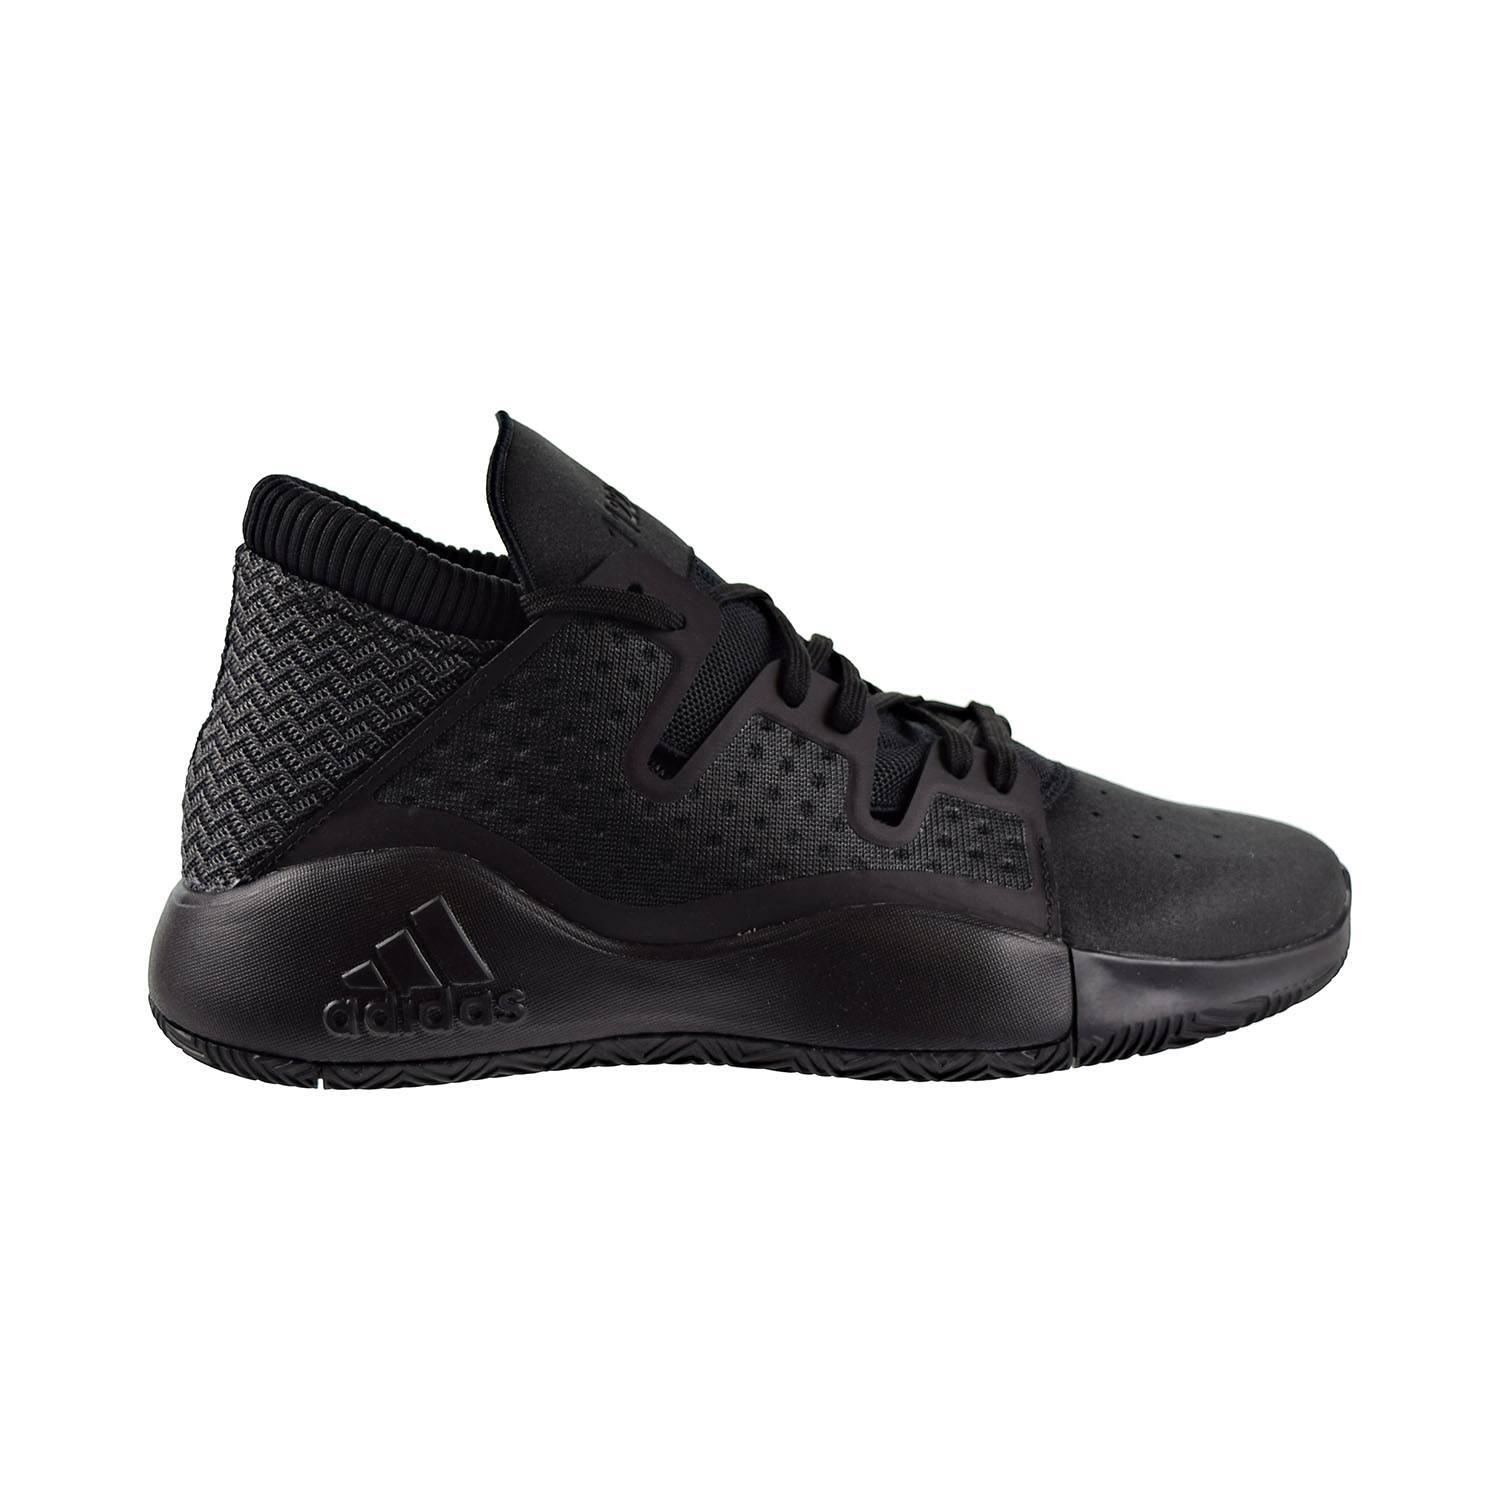 Adidas Pro Vision Mens Basketball Shoes 